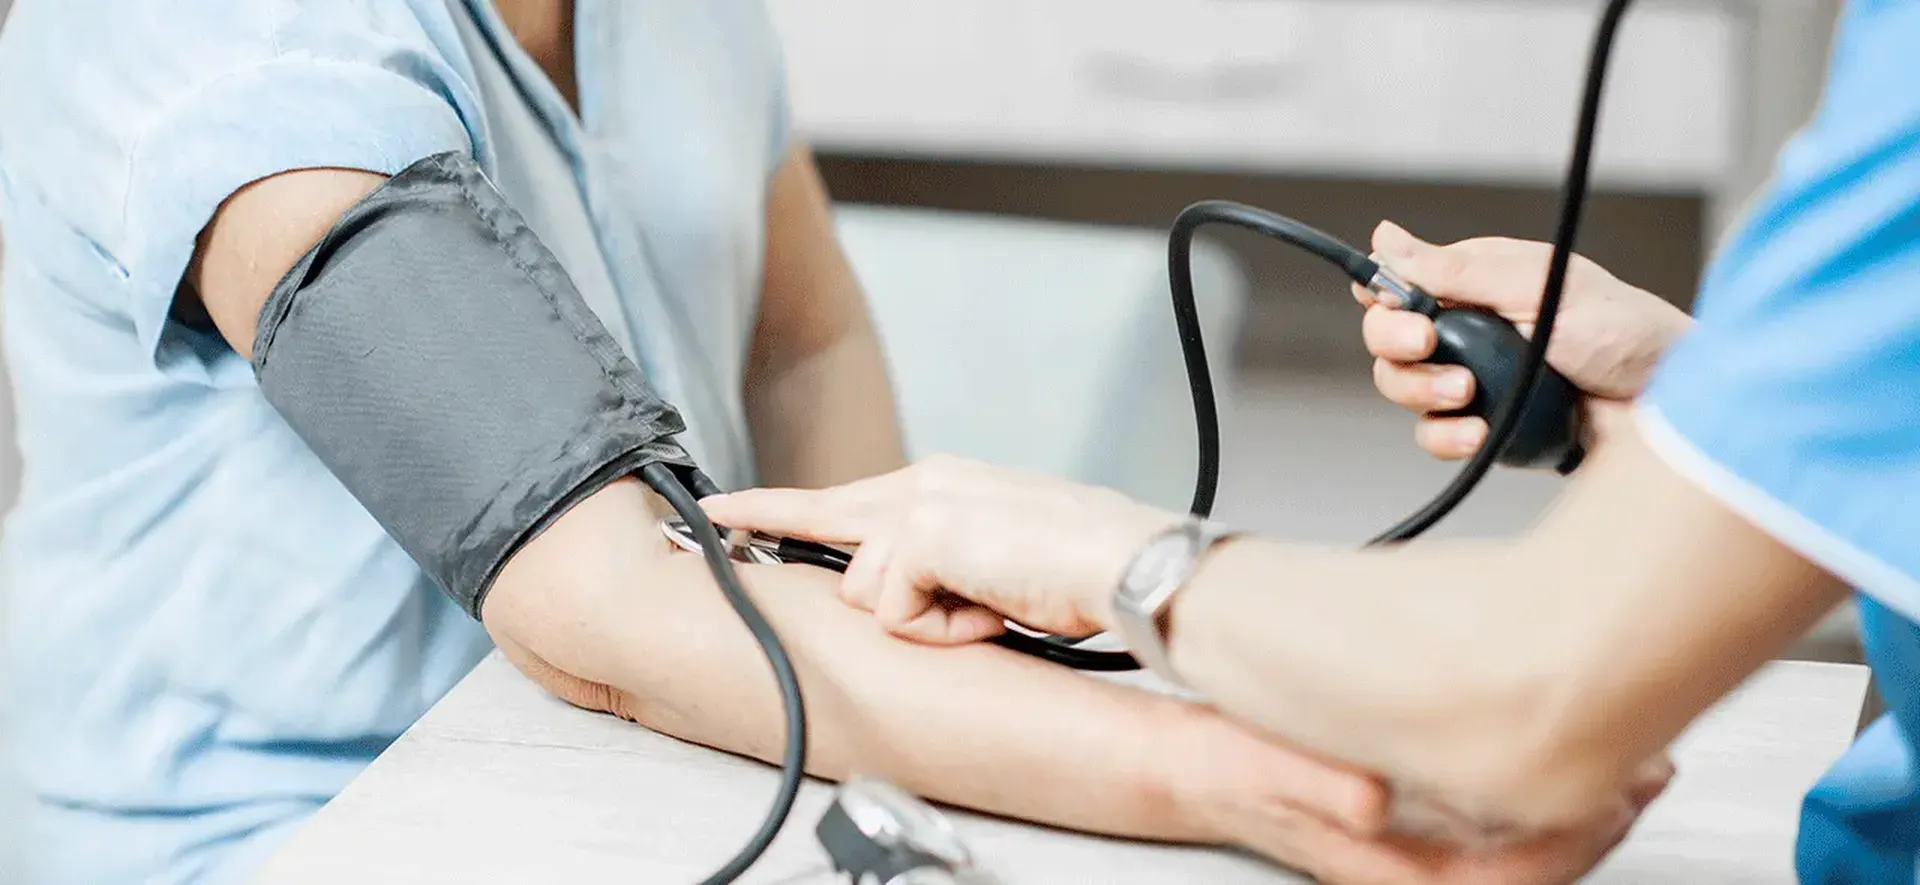 Hipertensão Arterial Sistêmica: Saúde explica o que é, quais os riscos e como prevenir a doença e os agravos